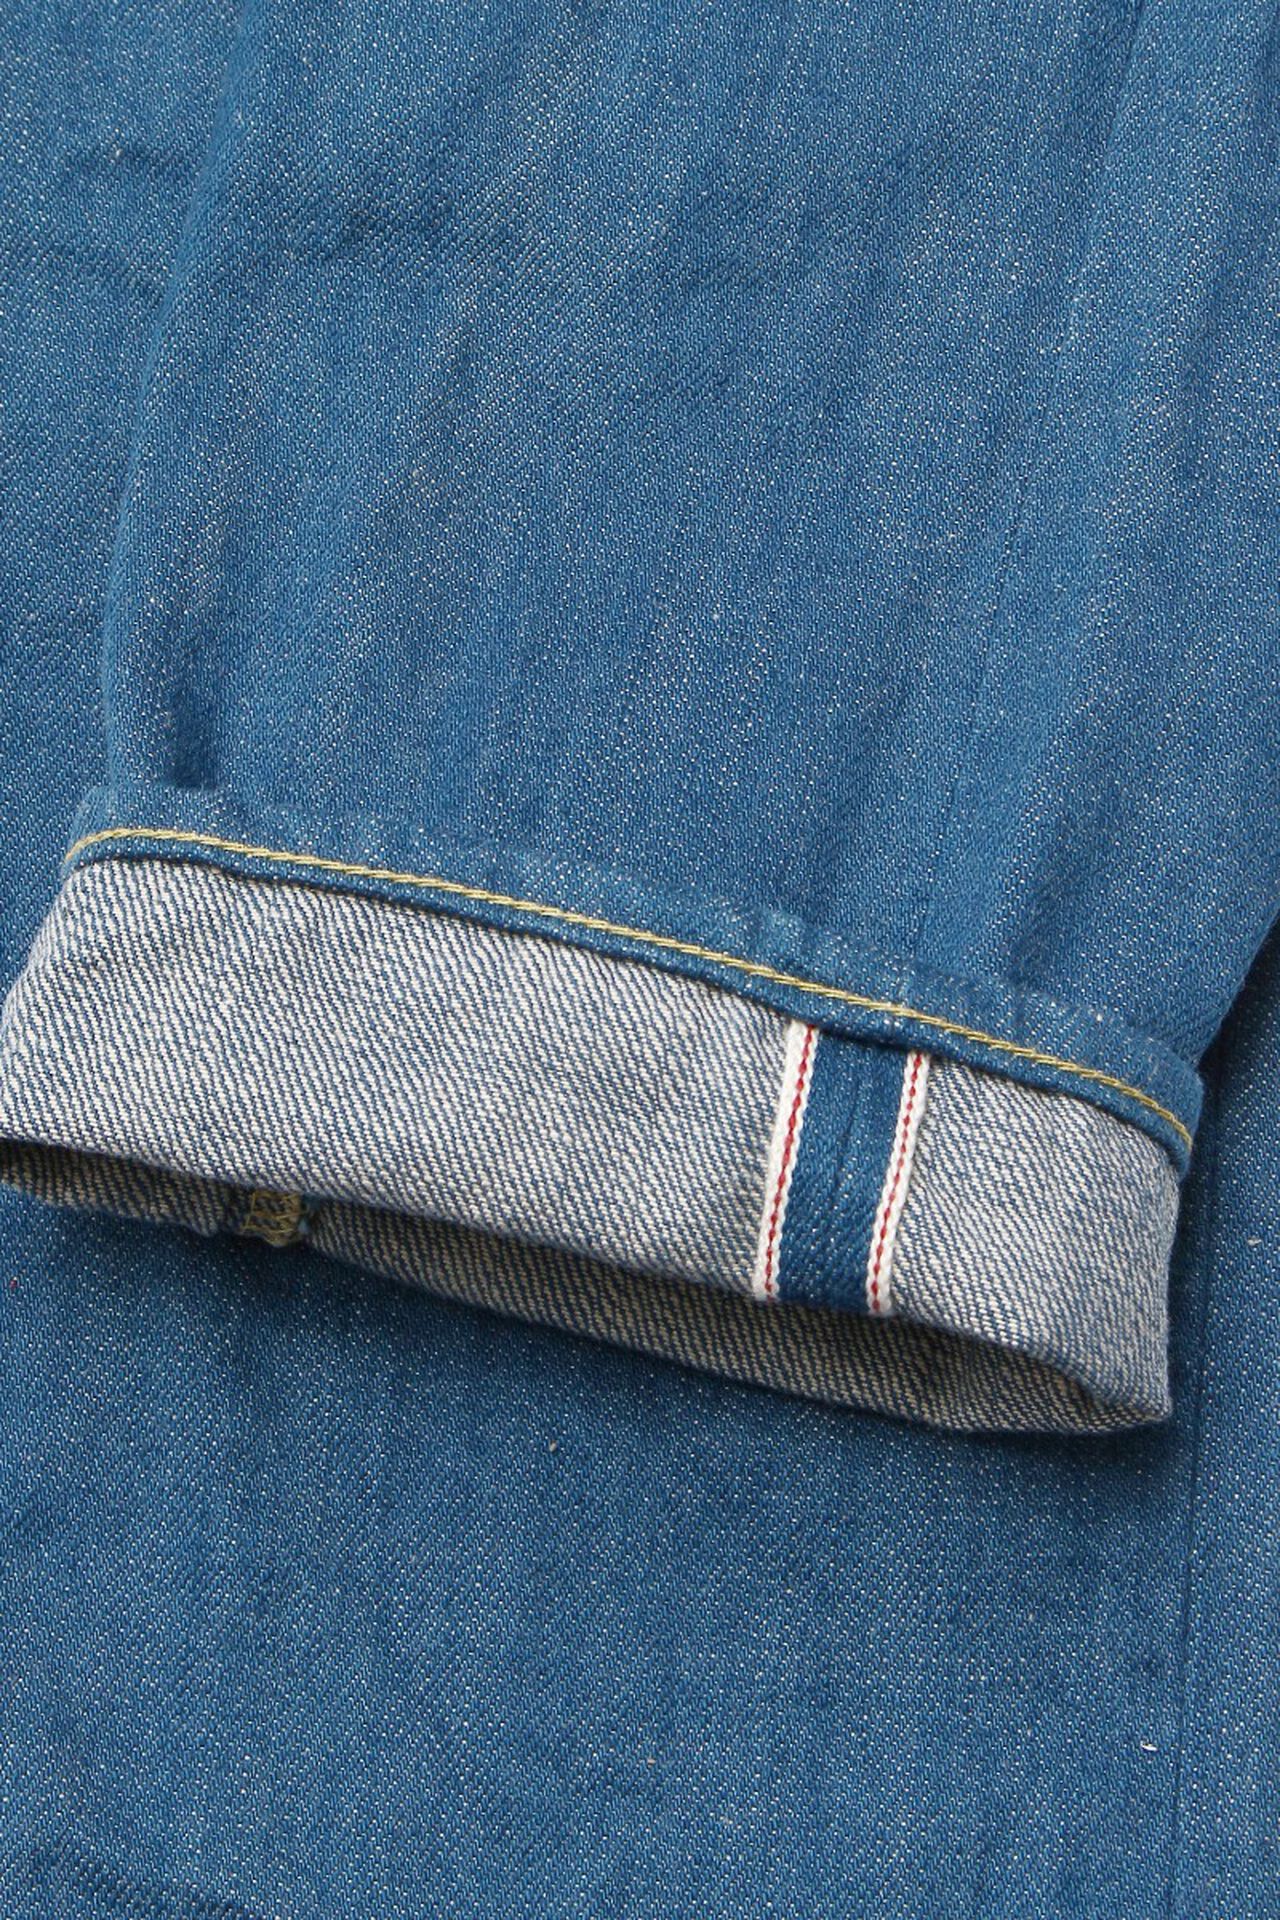 KHT 13oz "Kaze" Fade Blue High Tapered Jeans,, large image number 9